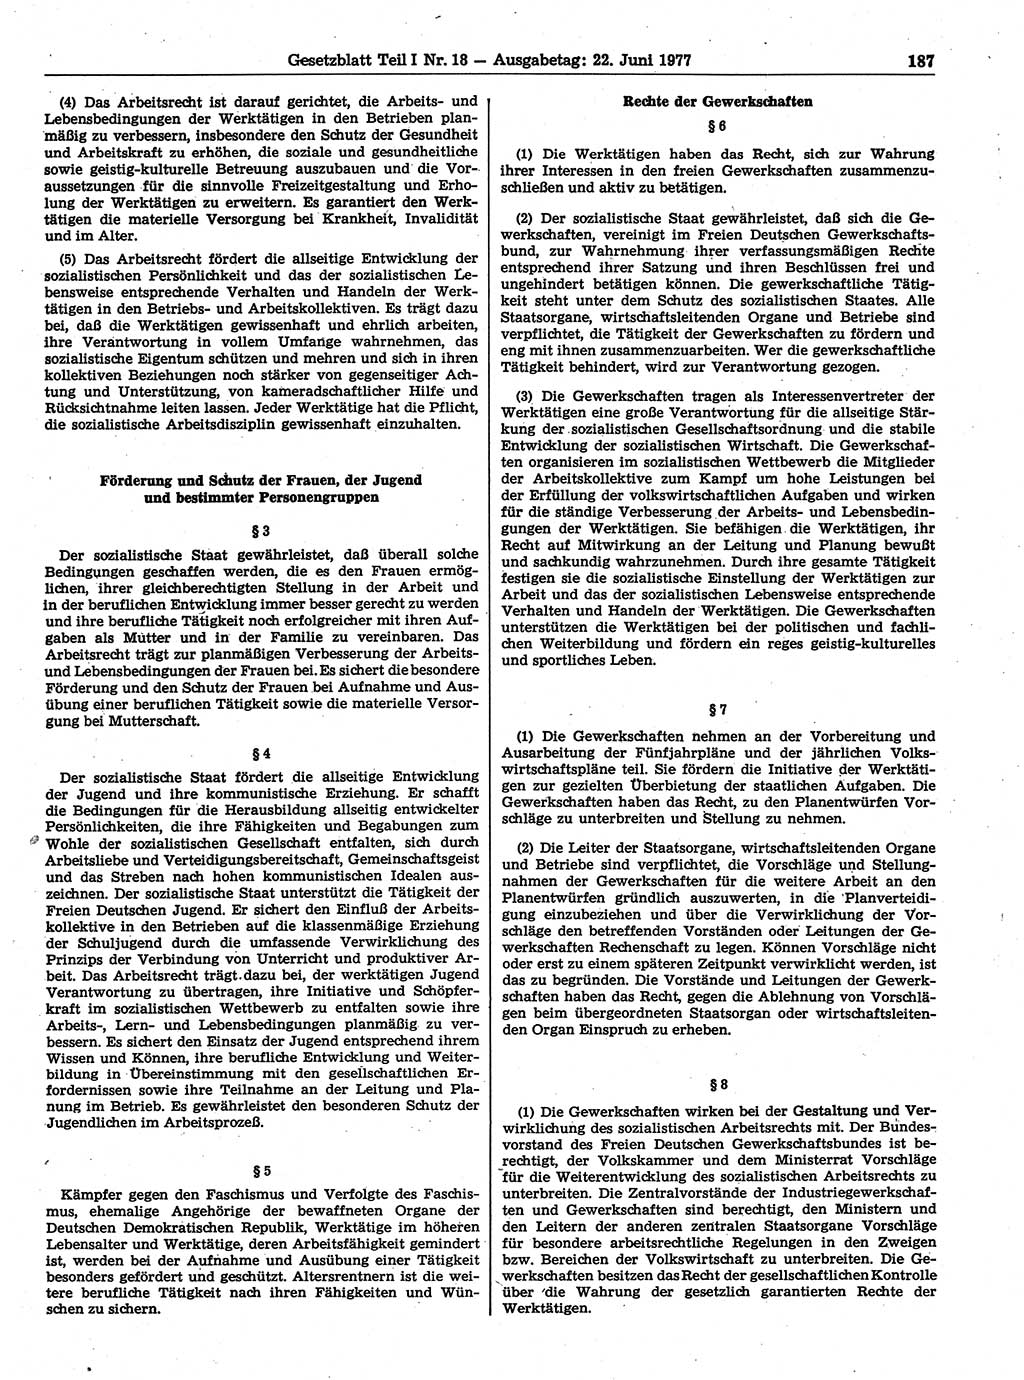 Gesetzblatt (GBl.) der Deutschen Demokratischen Republik (DDR) Teil Ⅰ 1977, Seite 187 (GBl. DDR Ⅰ 1977, S. 187)